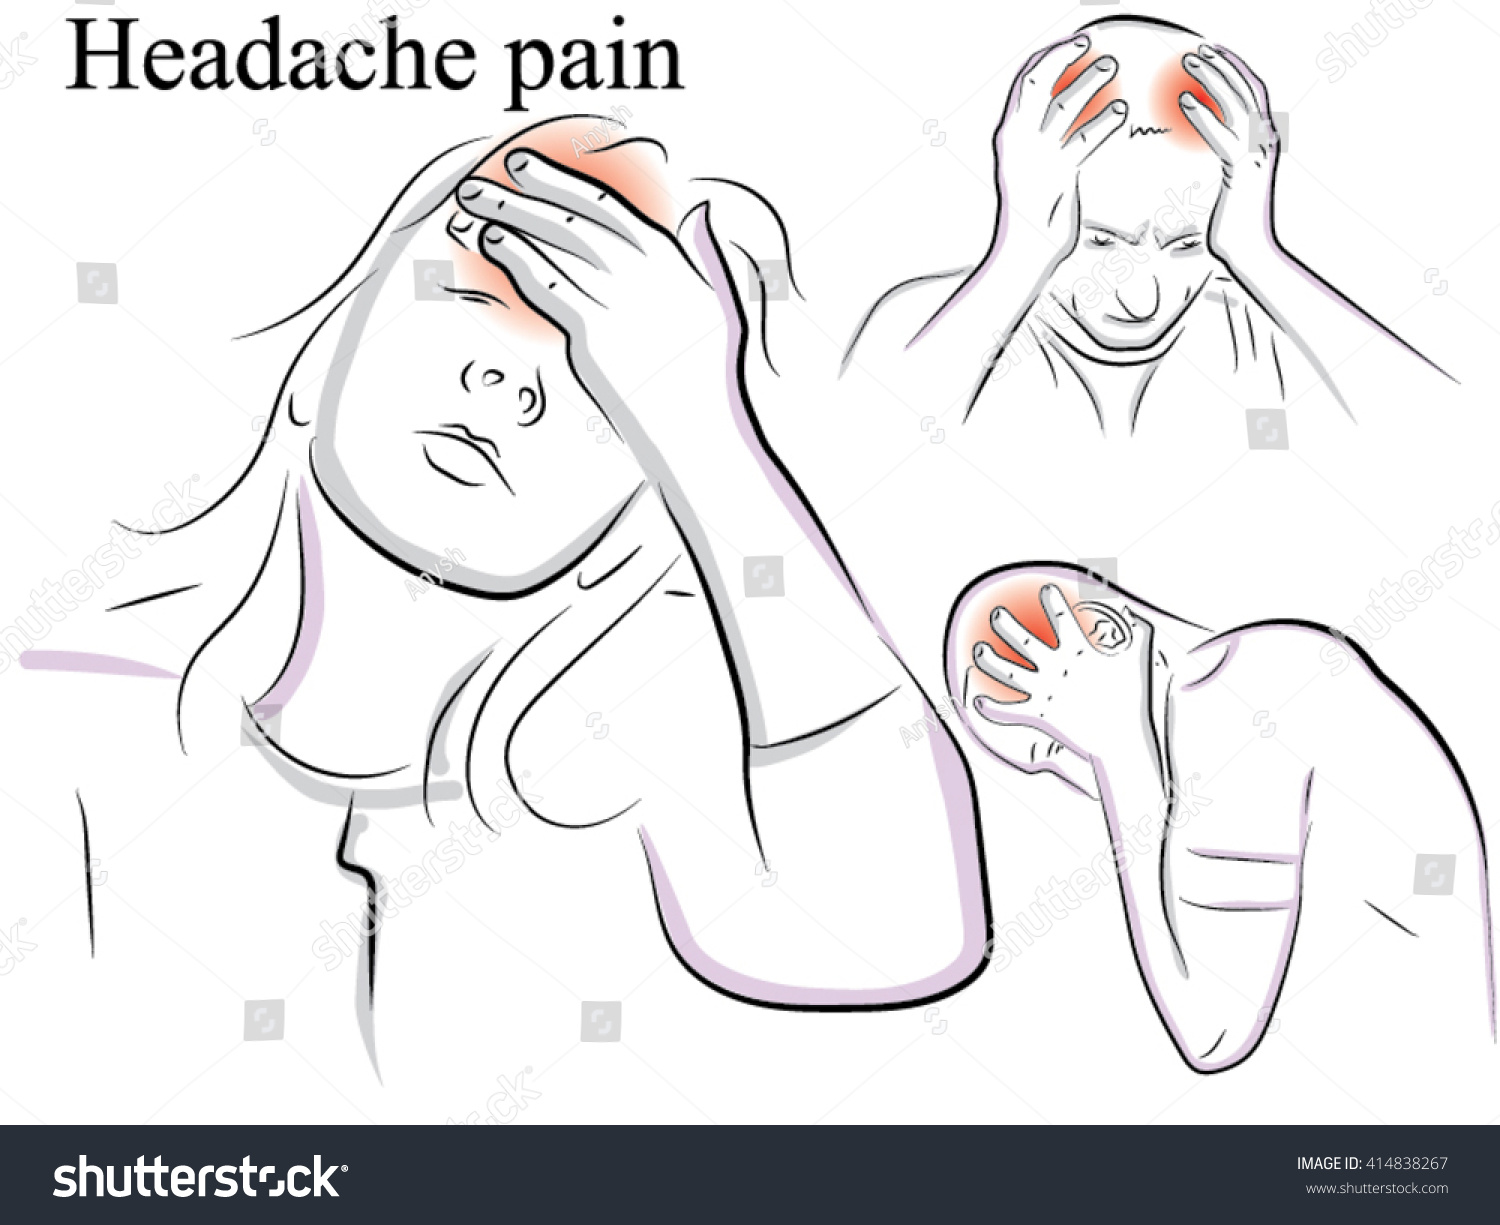 Masturbation good against headaches